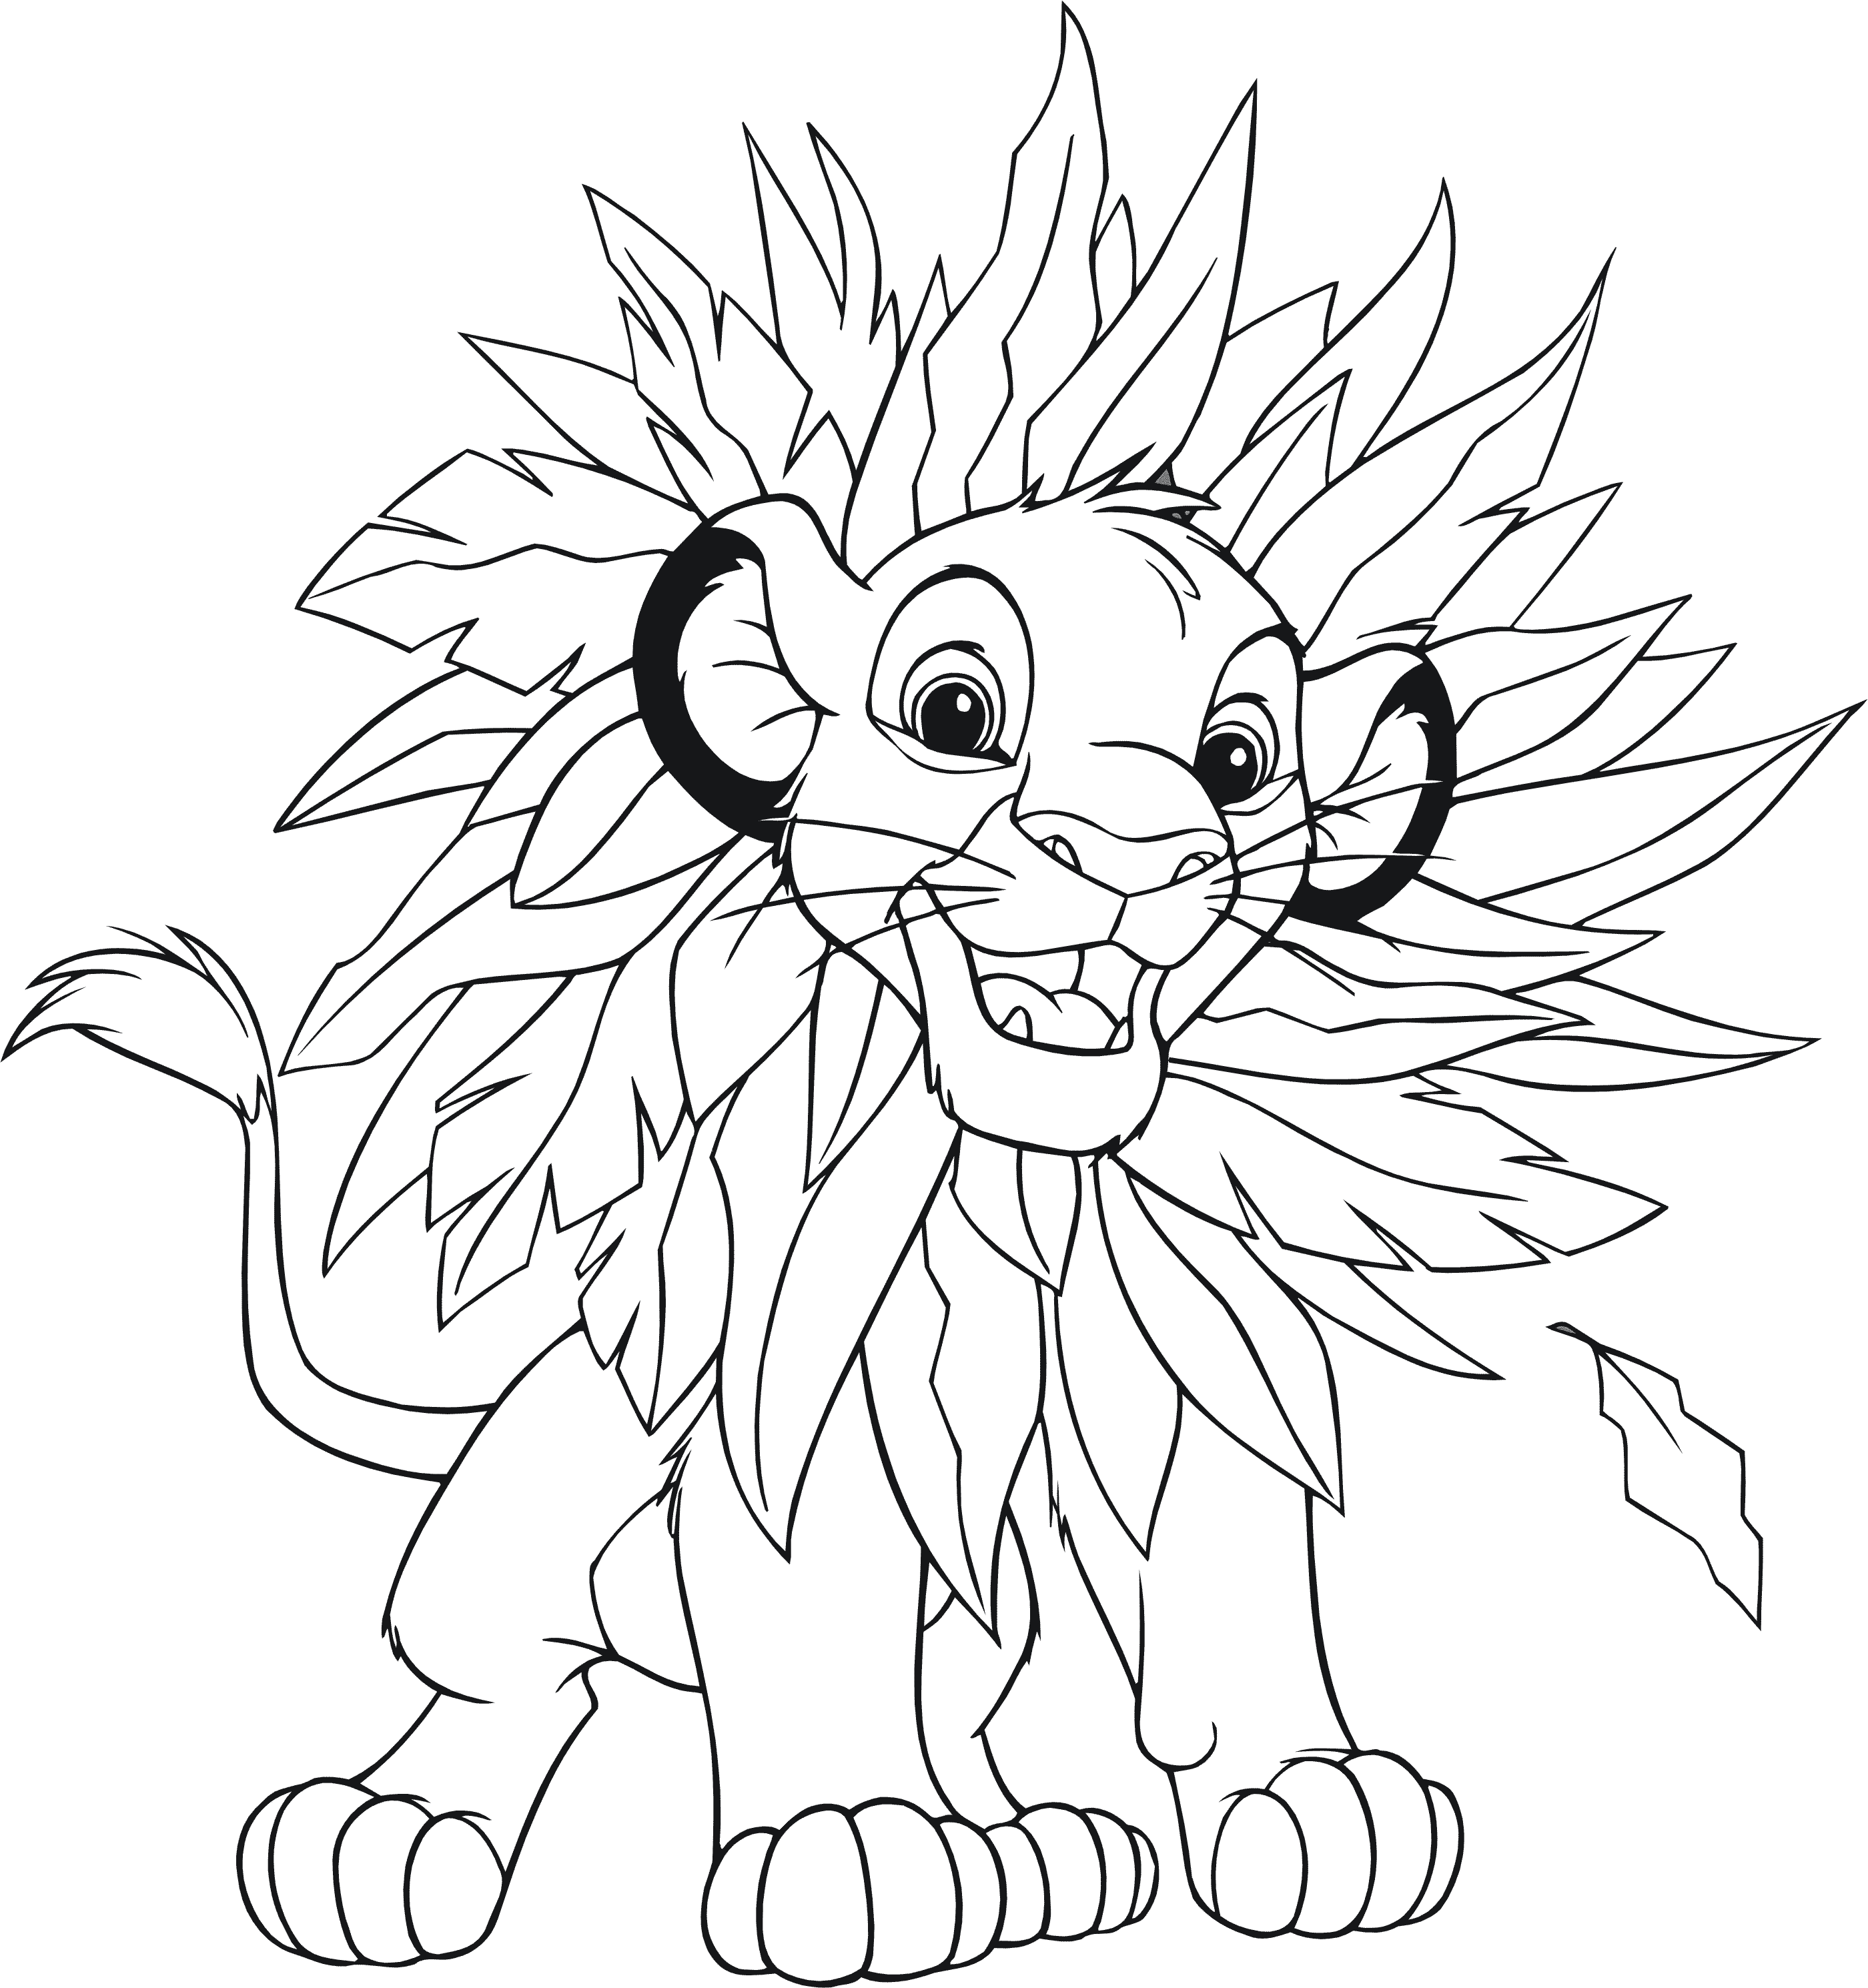 Раскраски из мультфильма Король лев (Lion King) скачать